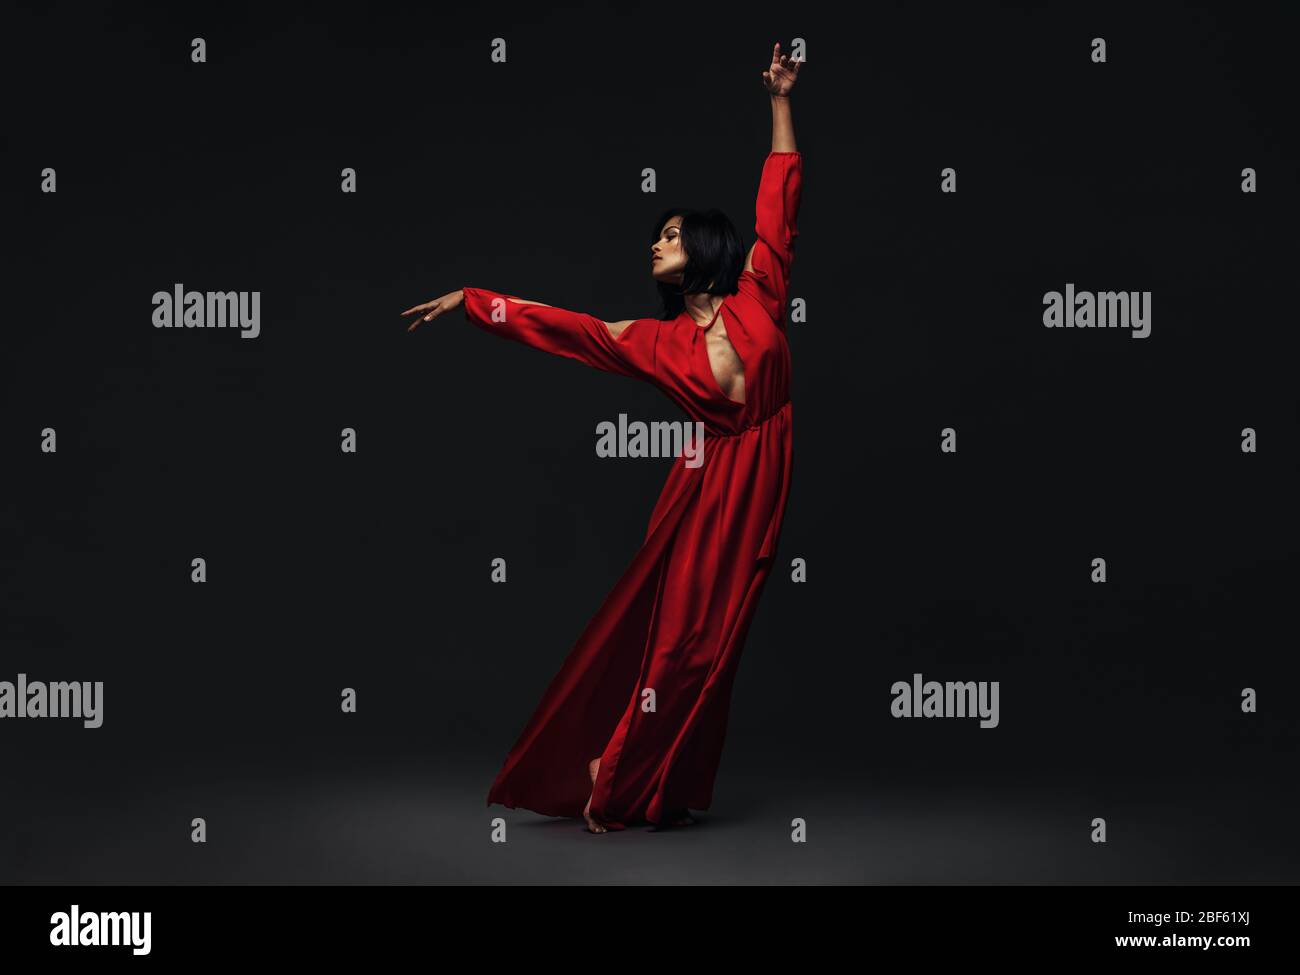 In voller Länge tanzt eine junge schöne Frau zeitgenössischen Tanz. Frau in rotem Kleid Durchführung schönen Tanz bewegt sich über schwarzen Hintergrund. Stockfoto